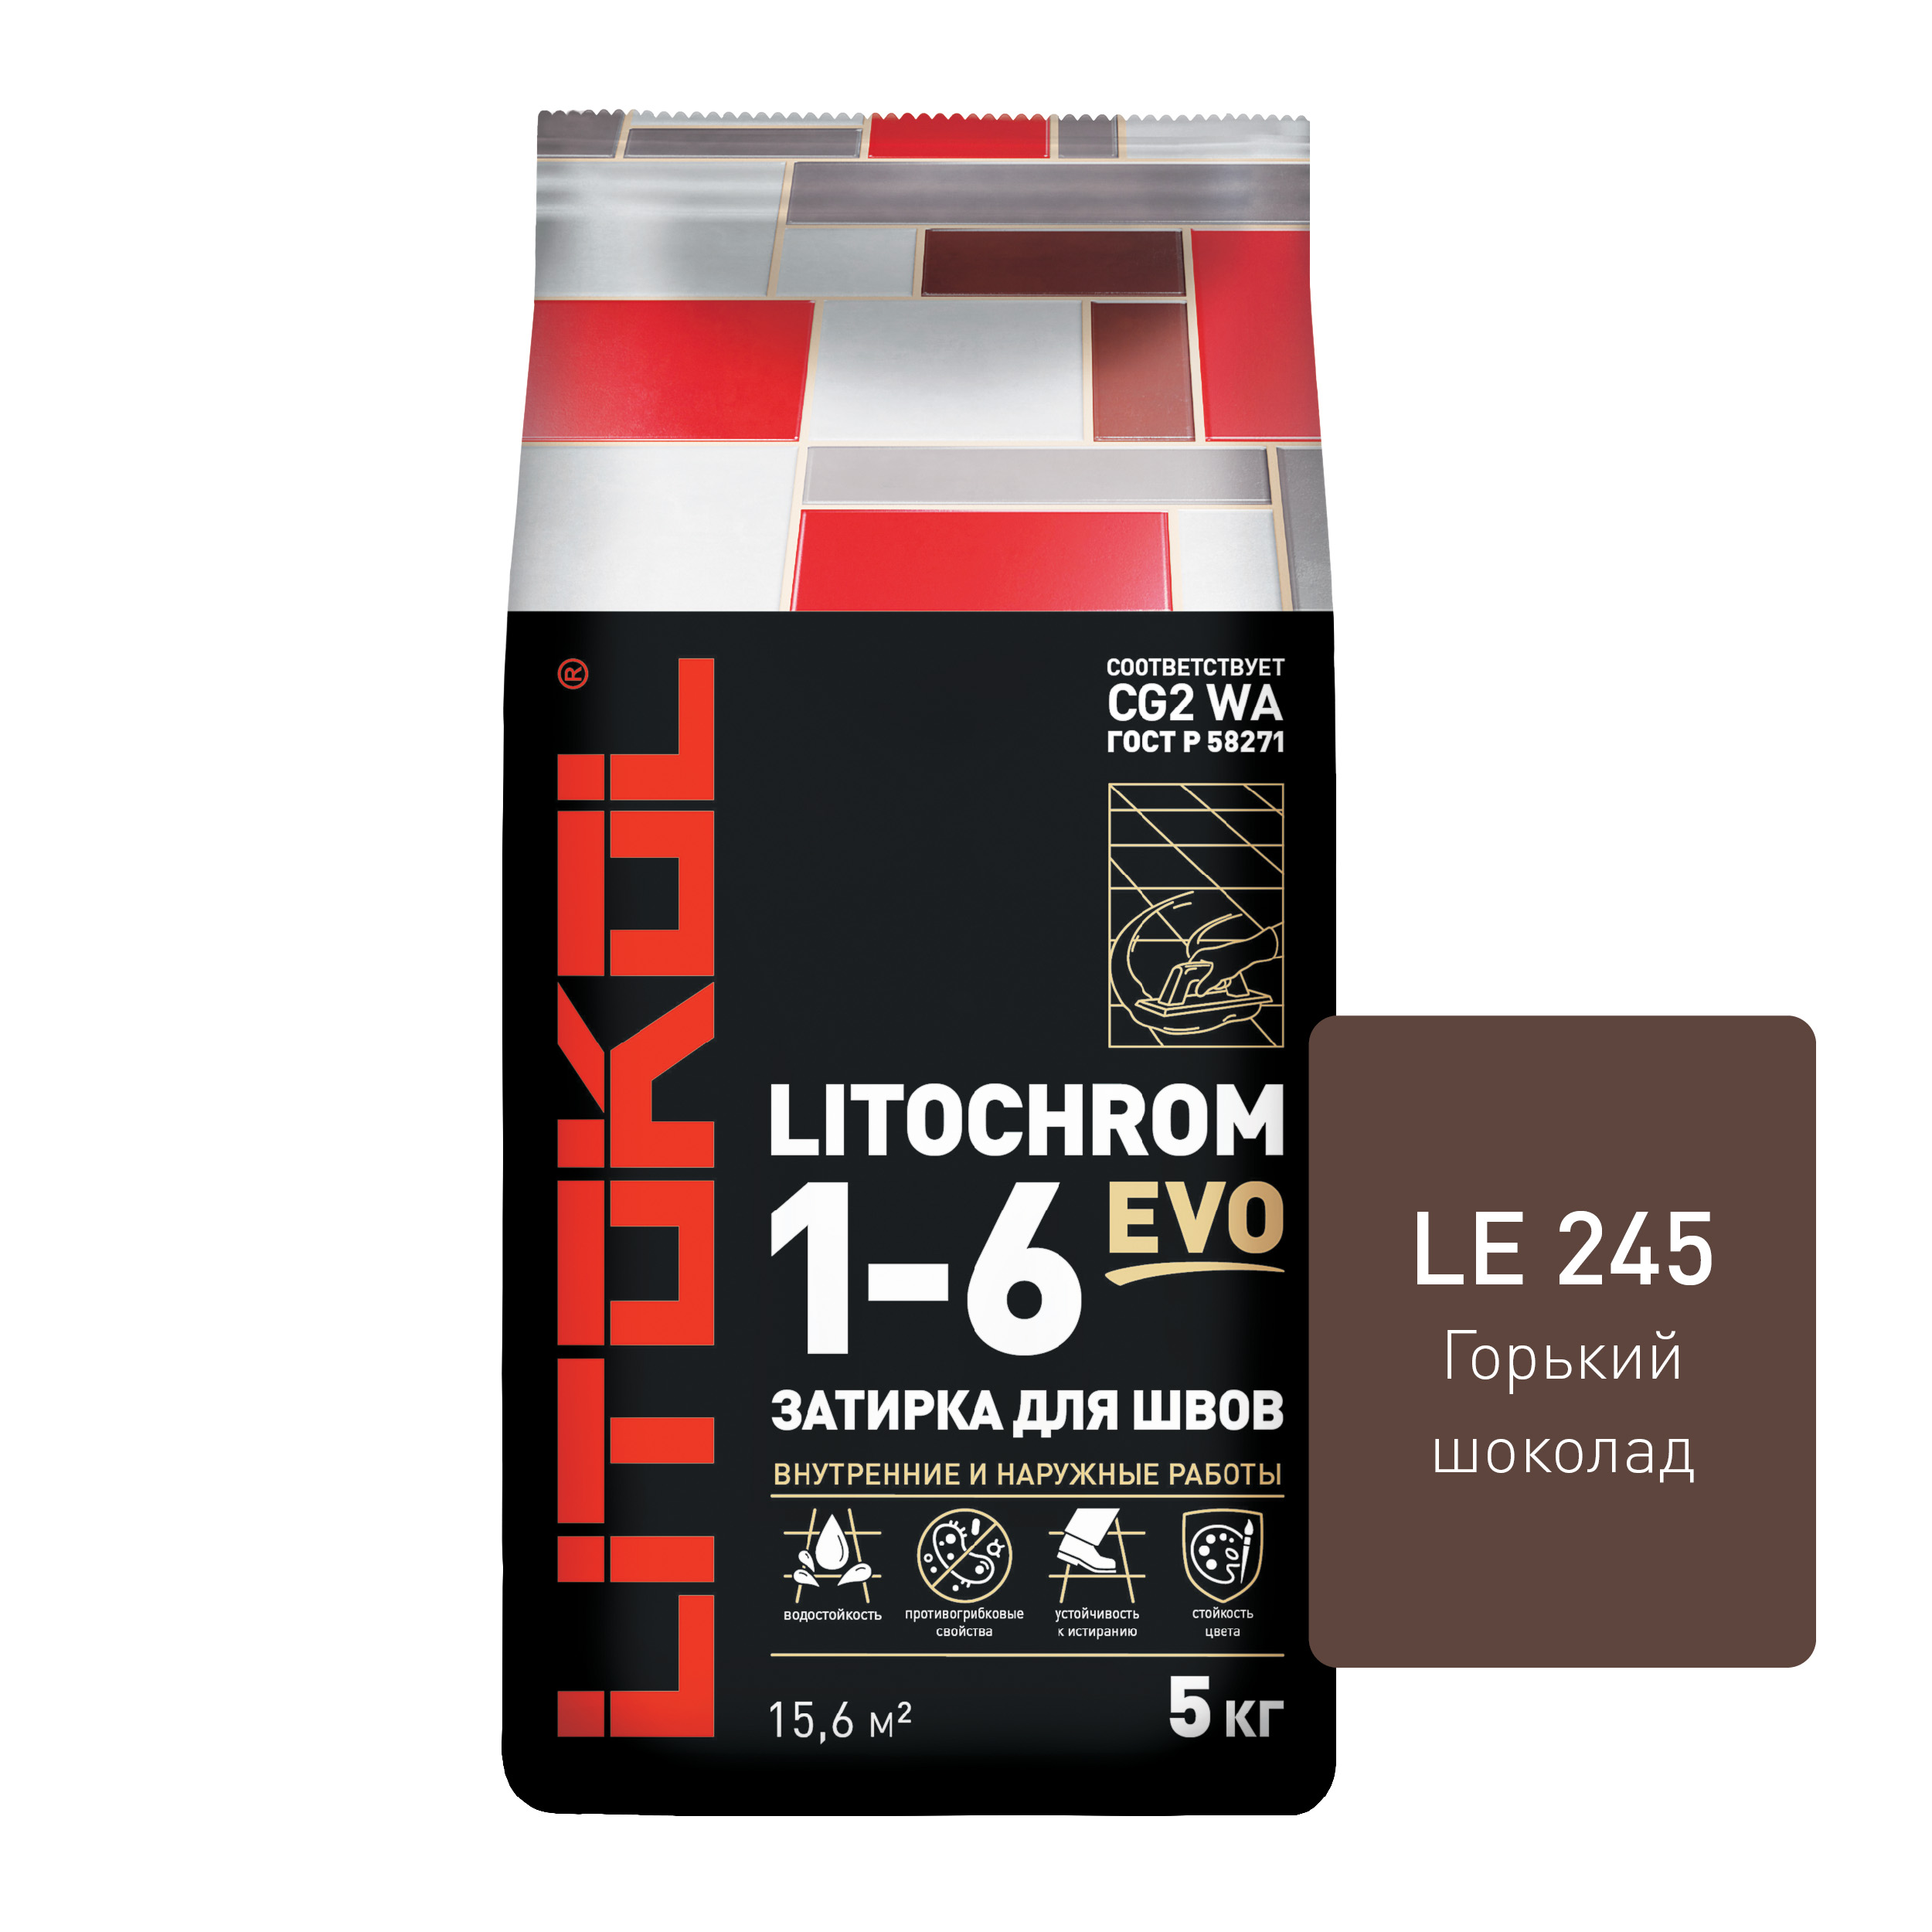 Цементная затирка LITOKOL LITOCHROM 1-6 EVO LE.245 Горький шоколад, 5 кг лента атласная 40 мм × 23 ± 1 м горький шоколад м496